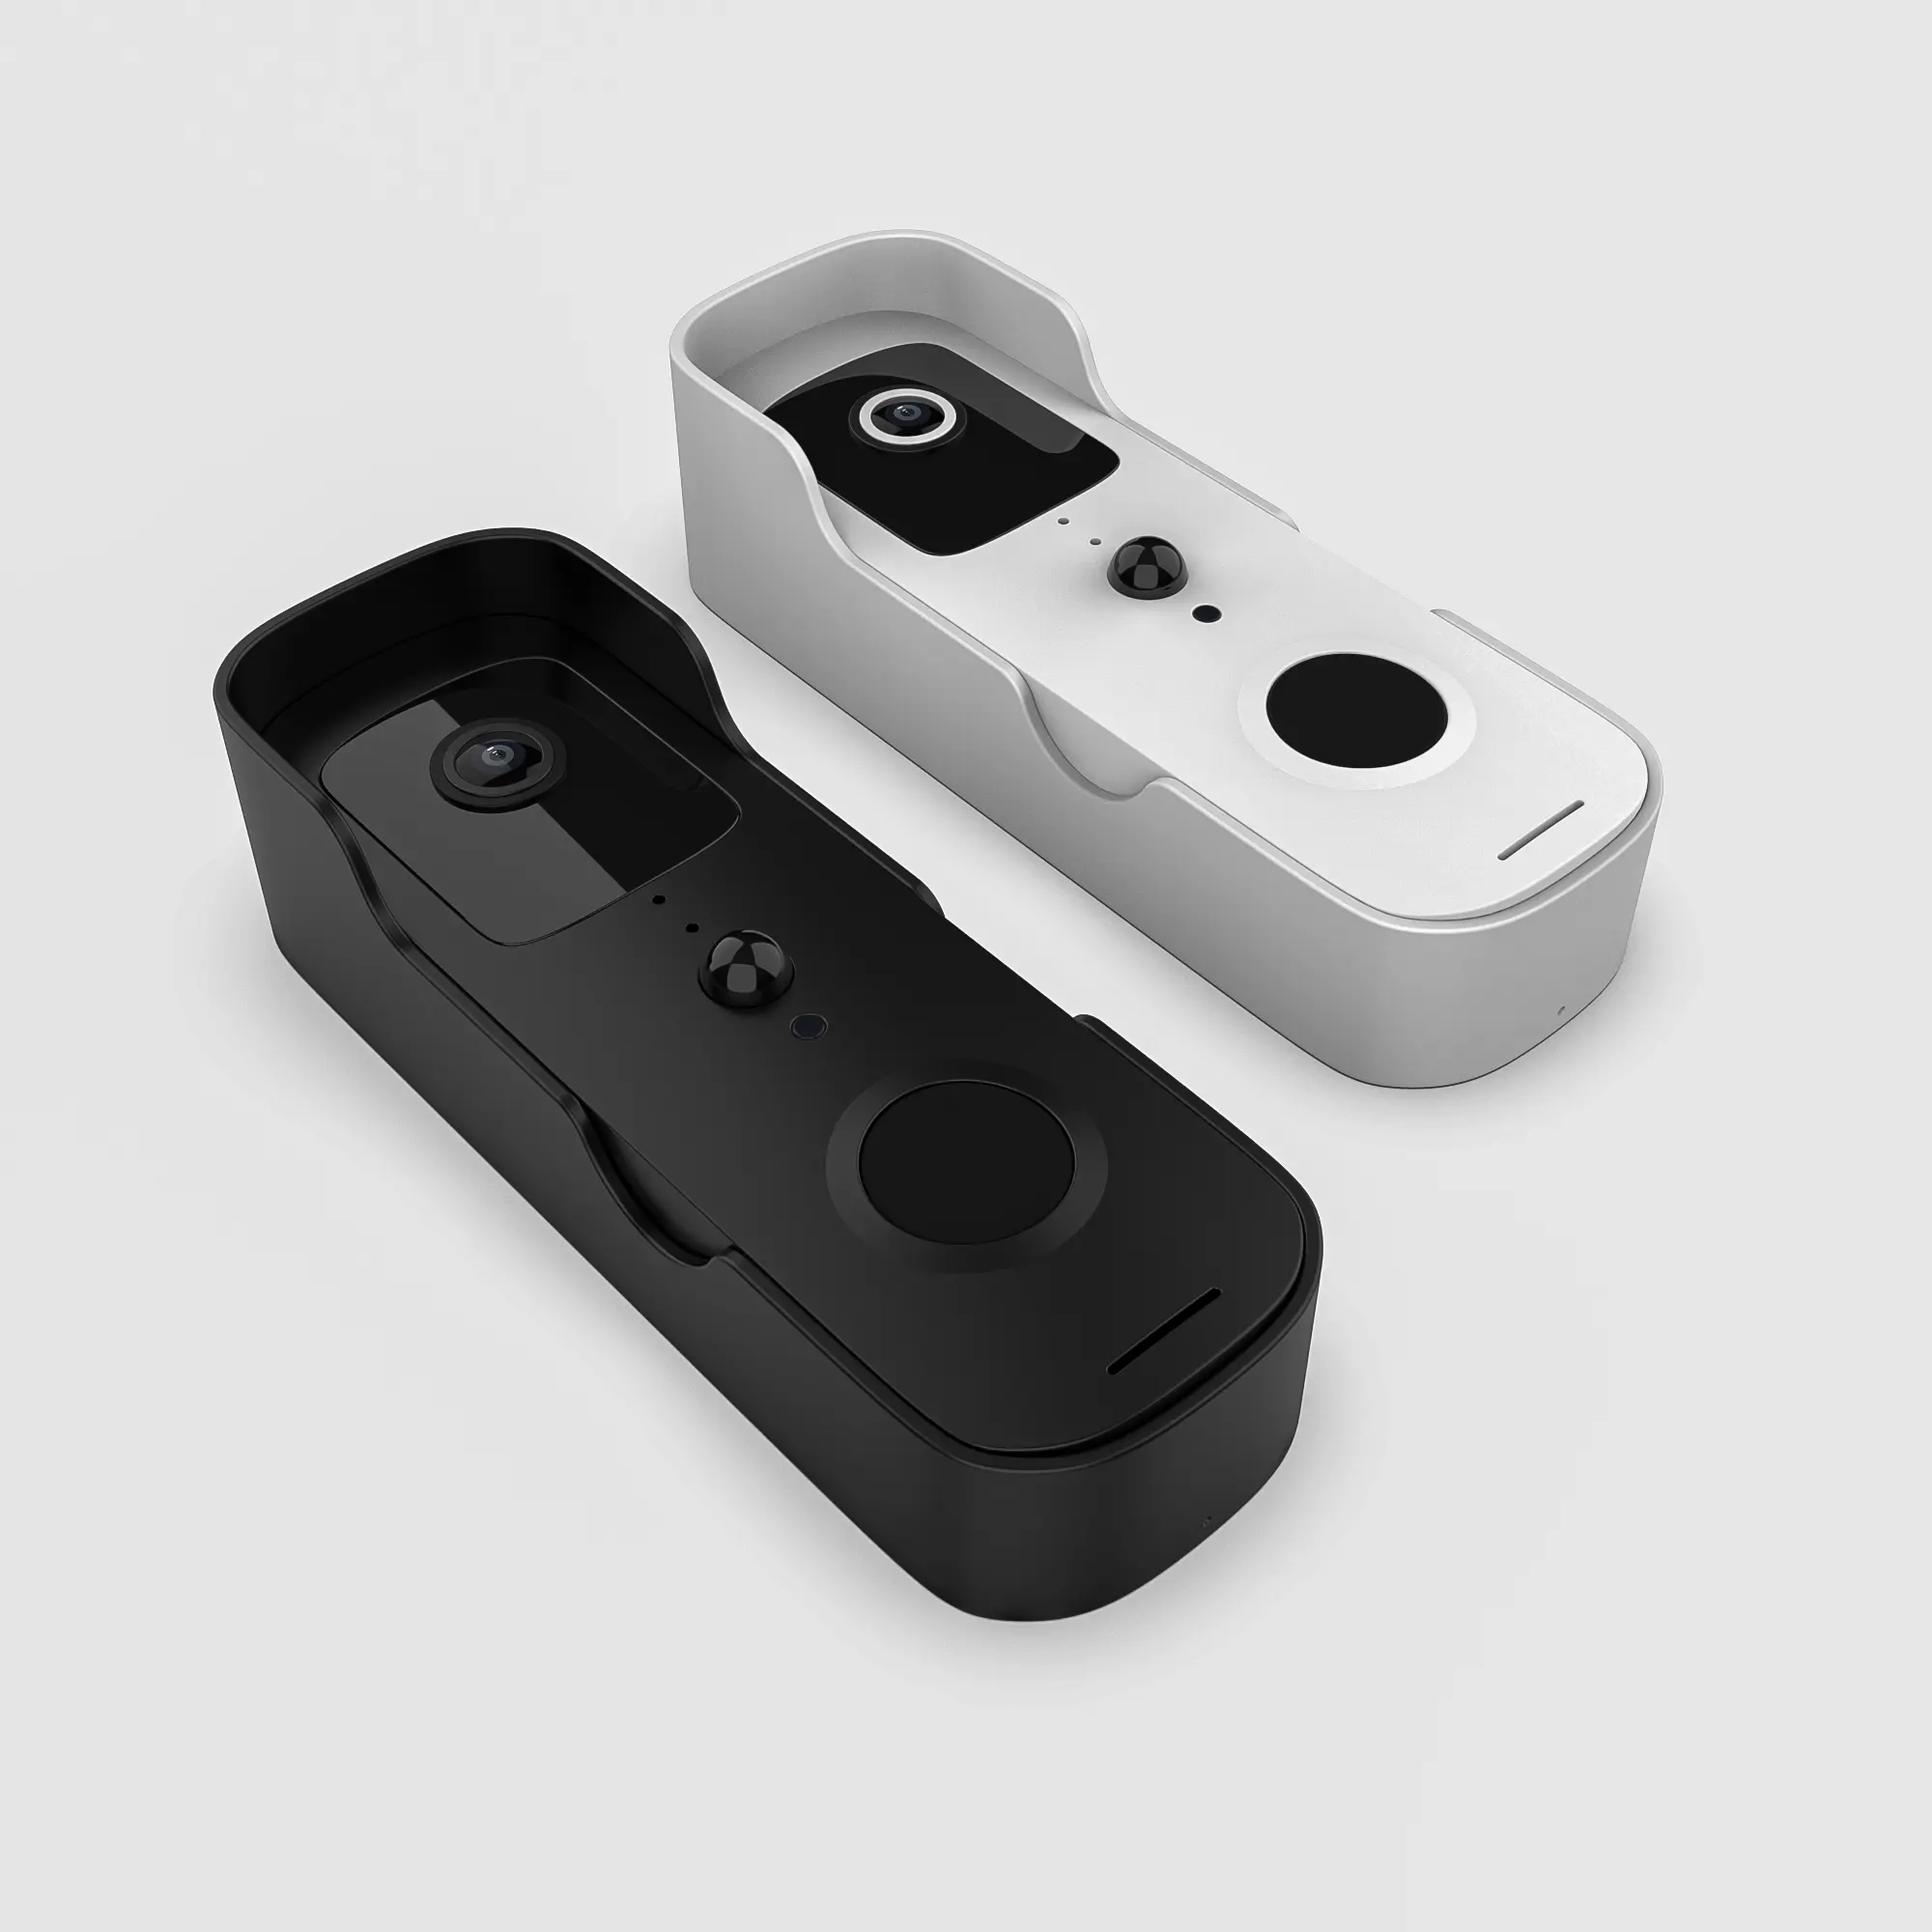 Tuya — sonnette intelligente sans fil pour maison intelligente, fonctionne avec l'application Tuya, visiophone/interphone vidéo, batterie carillon